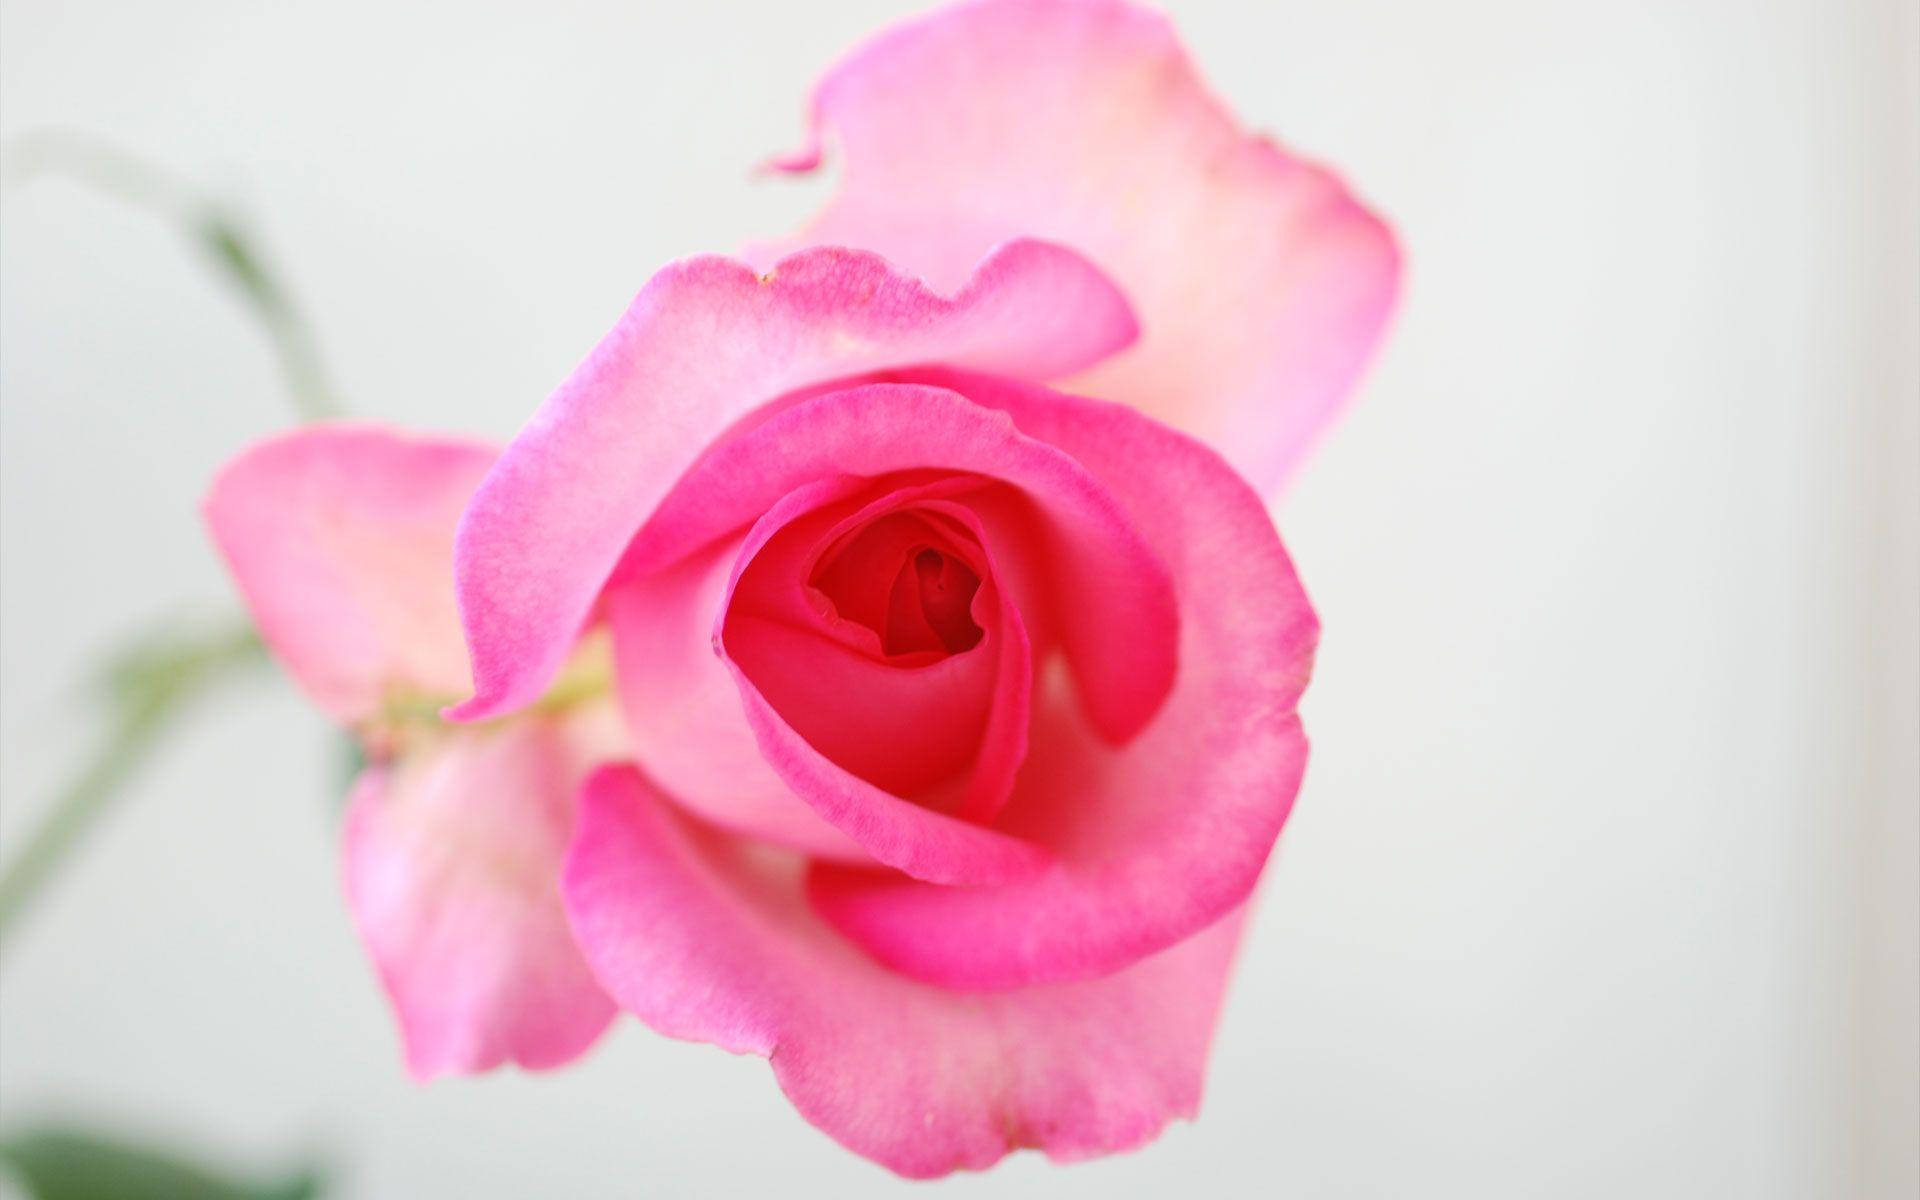 Translucent Pink Rose Flower